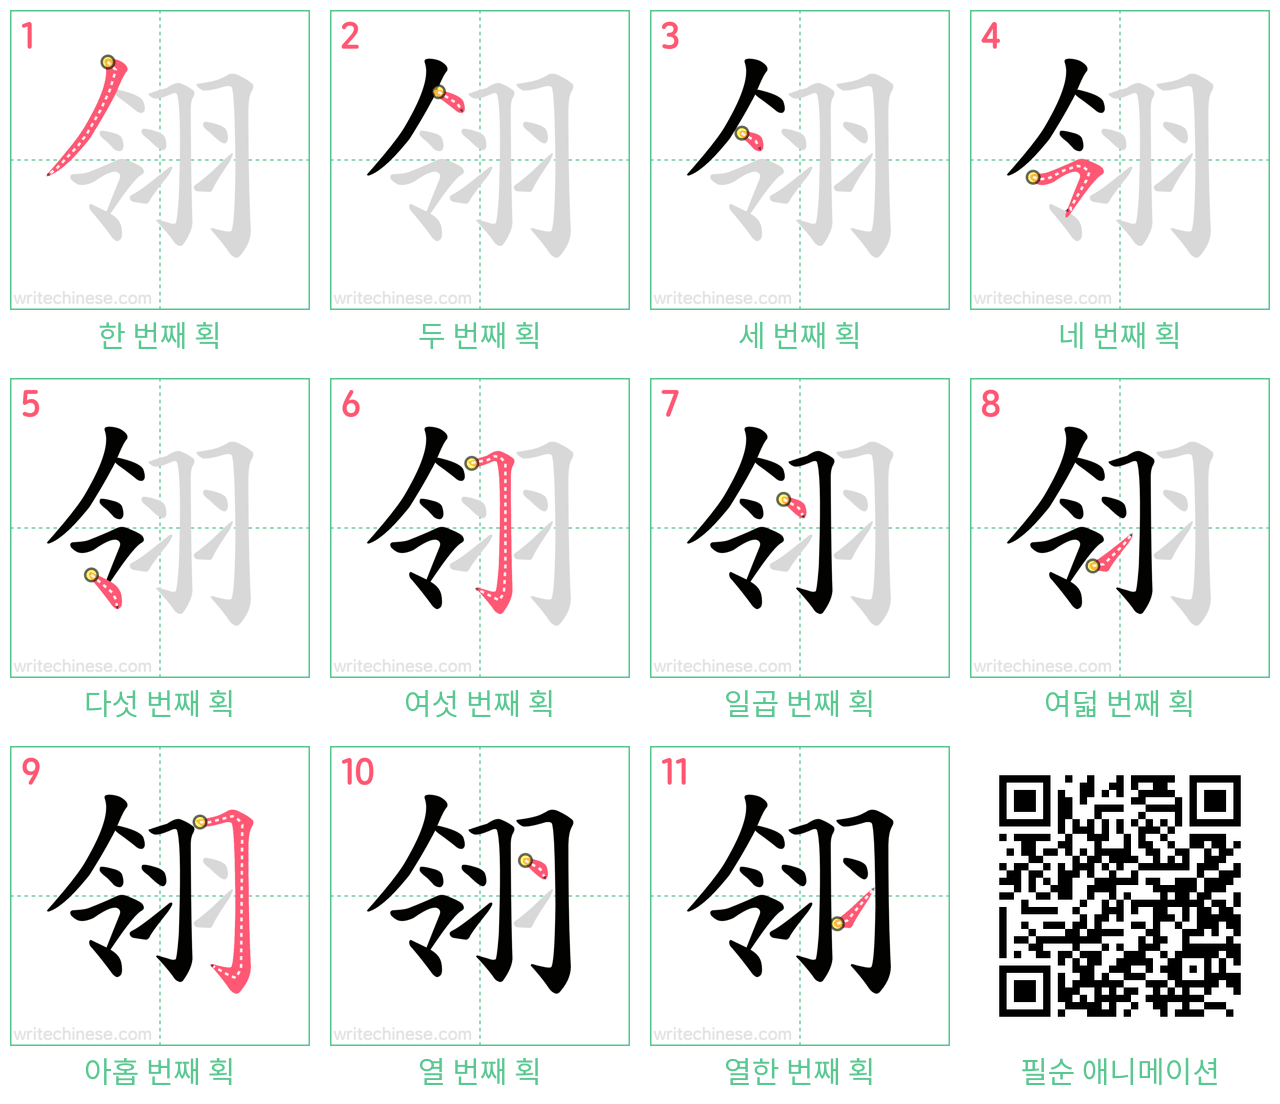 翎 step-by-step stroke order diagrams